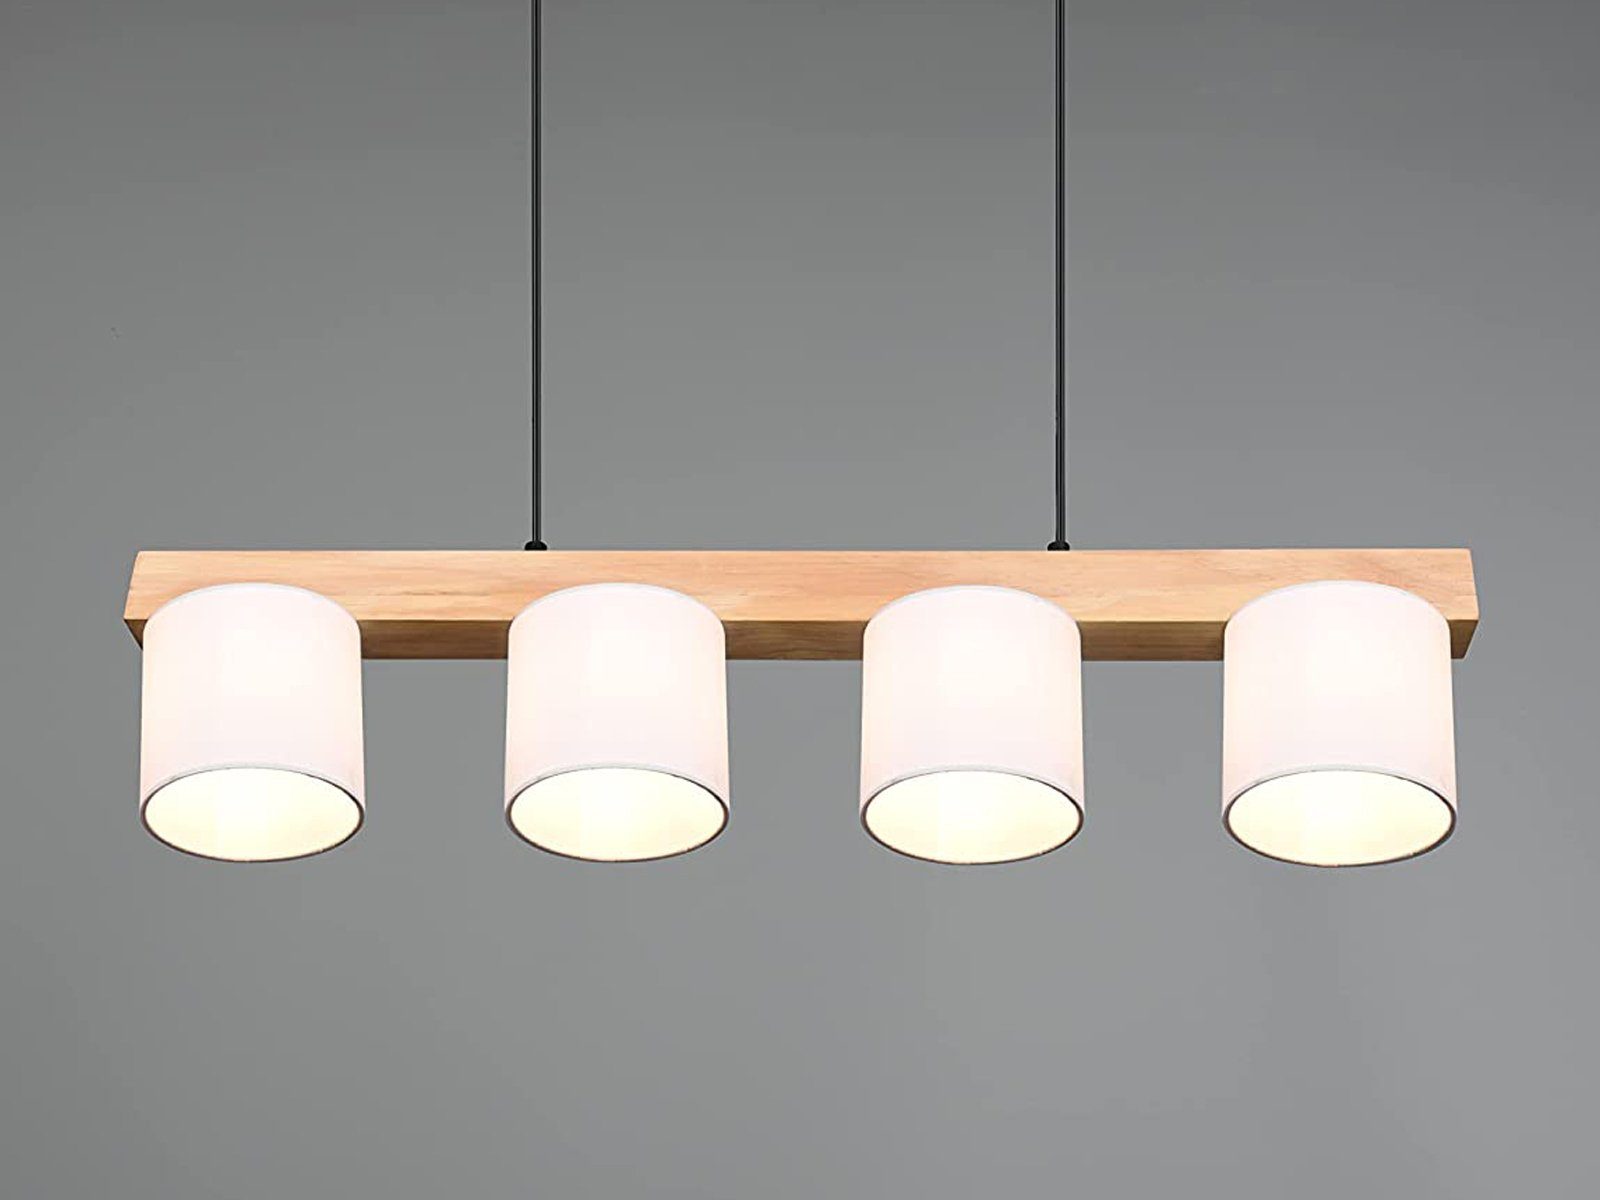 75cm wechselbar, LED B LED Balken-lampe Kücheninsel Skandinavisch-e Schwarz-Holz-Weiß Holz-balken Dimmfunktion, Weiß, Warmweiß, Pendelleuchte, meineWunschleuchte